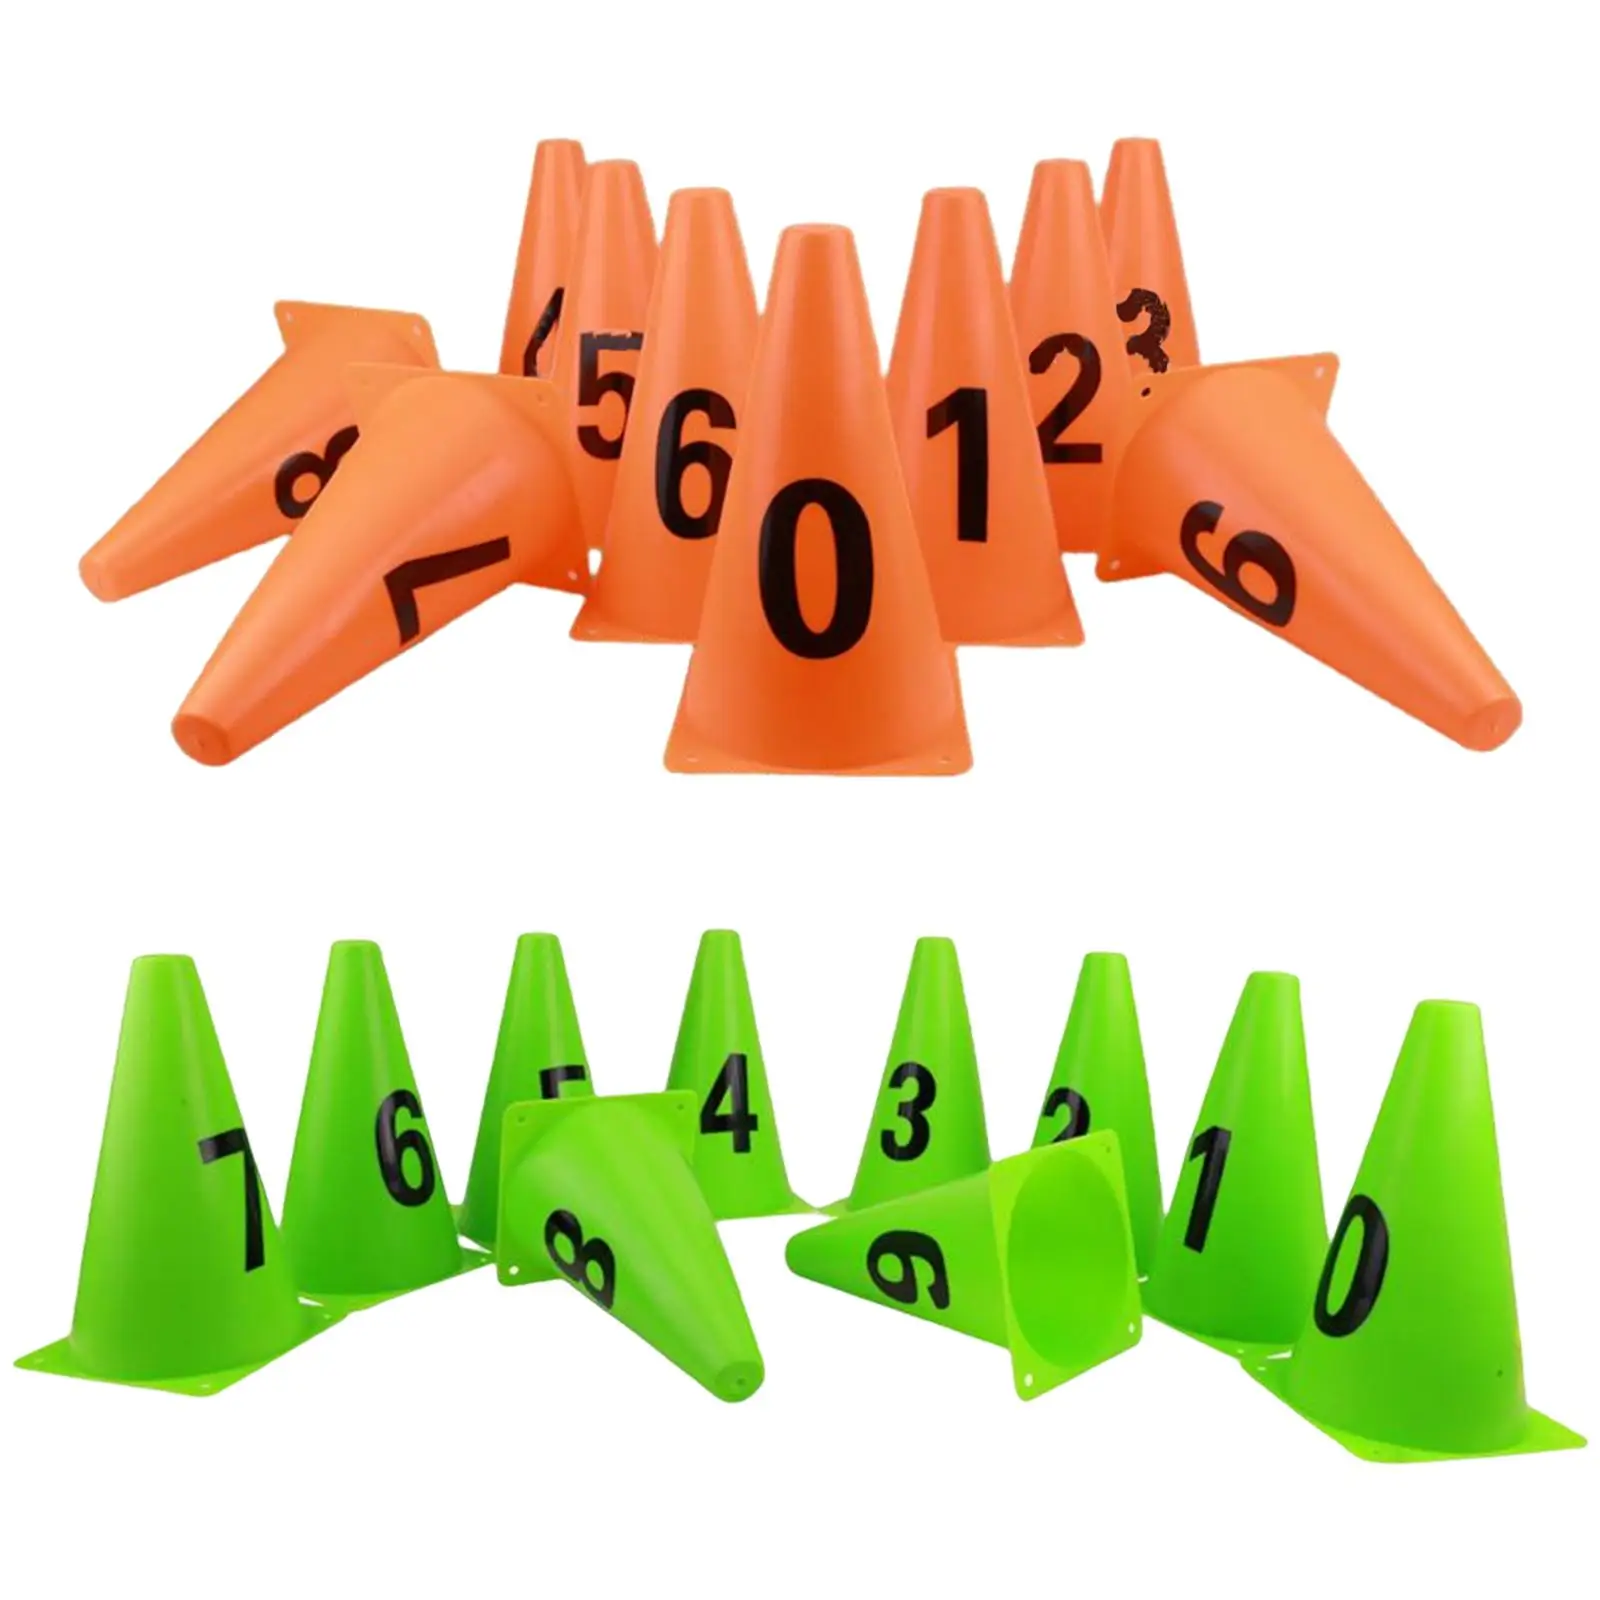 10x Small Cones Multipurpose Supplies Makers for Outdoor Indoor Activities